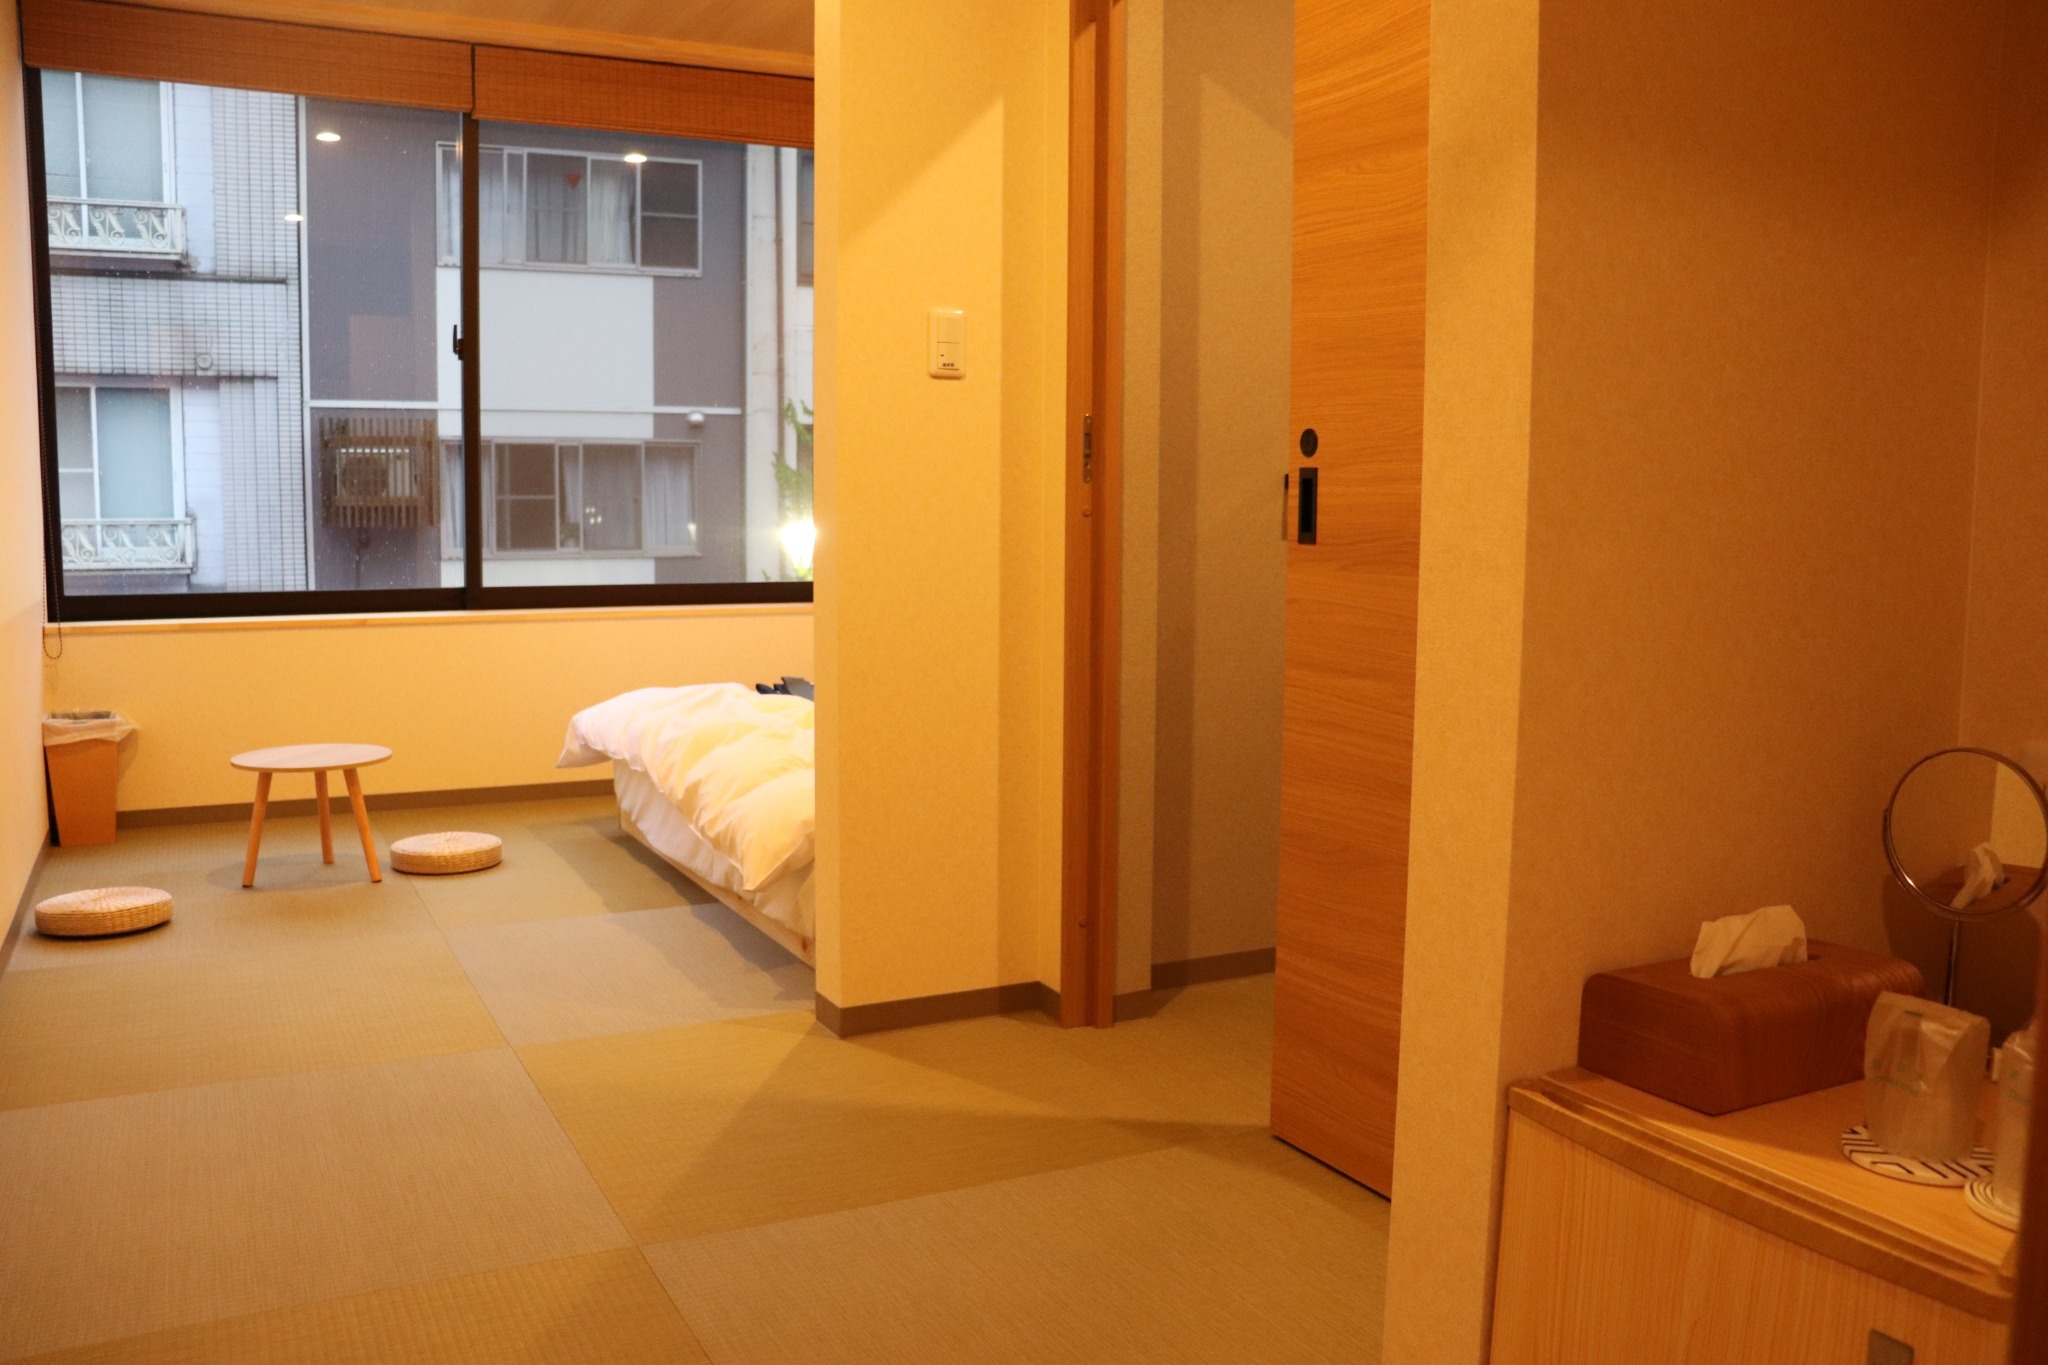 201城崎温泉駅から徒歩一分!今なら一階カフェのモーニングセットと2階「華」のレンタル浴衣が無料!